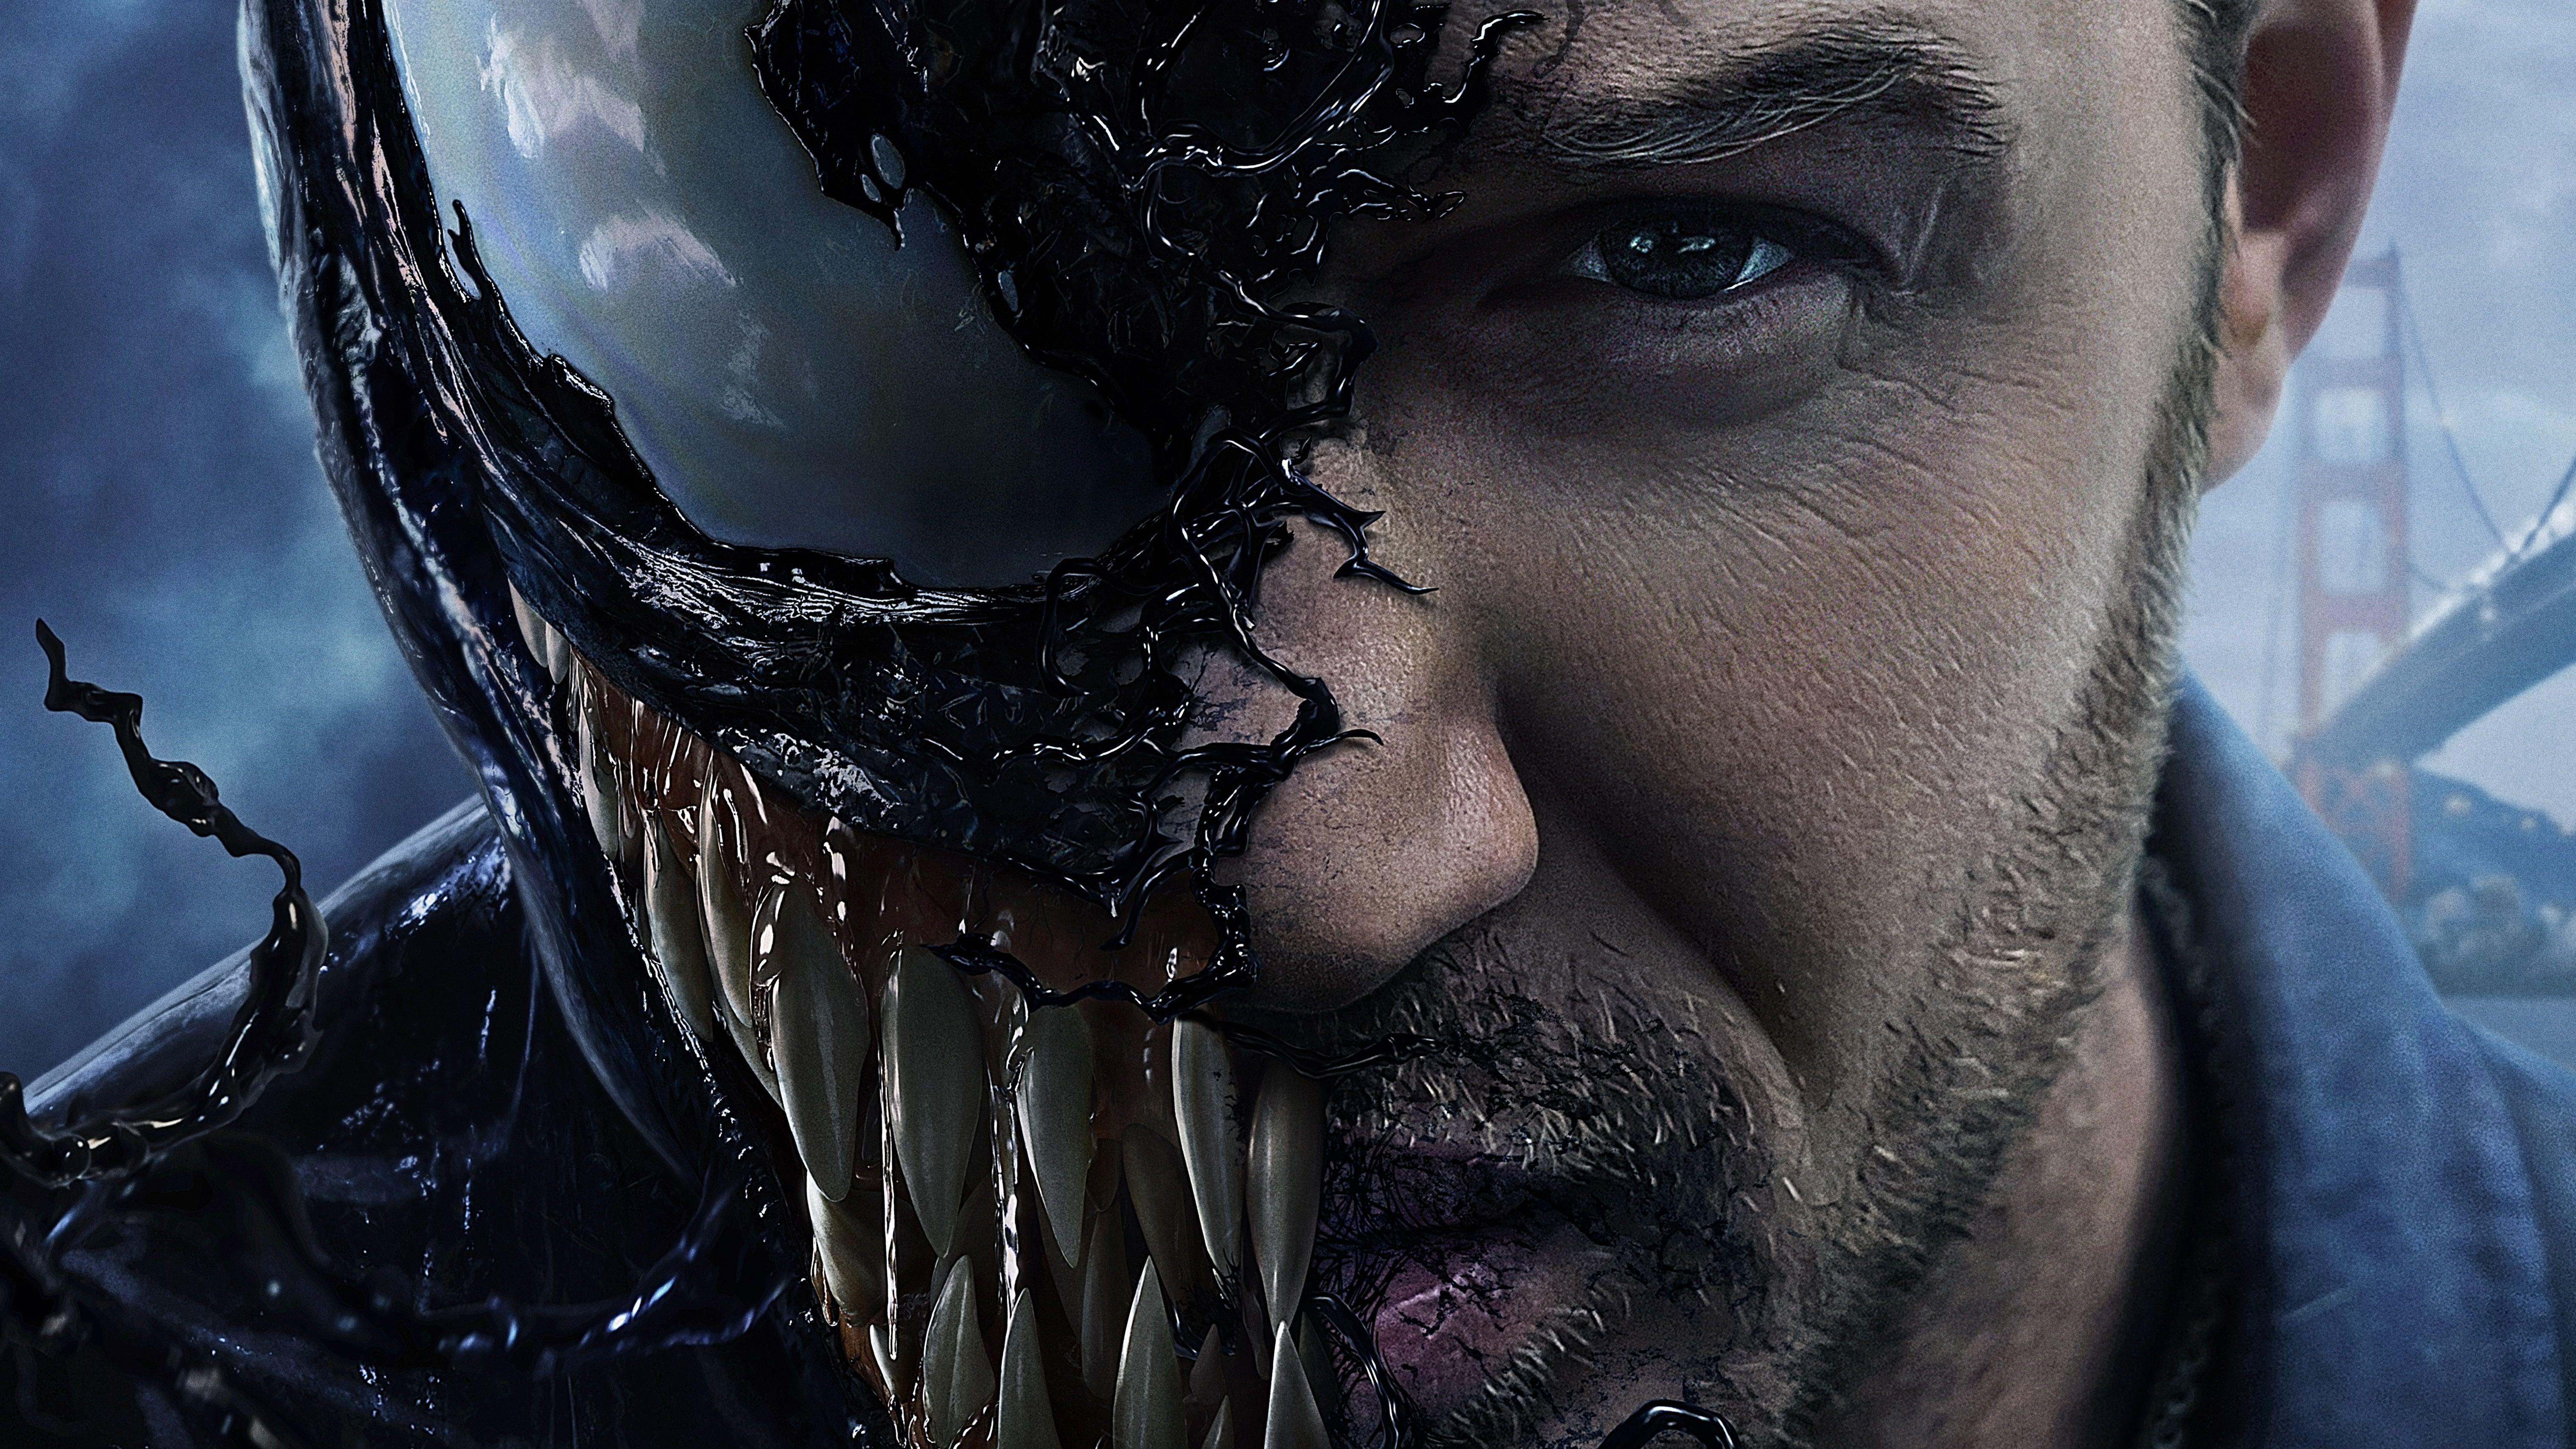 Venom Movie Background HD. TV SHOWS AIRING